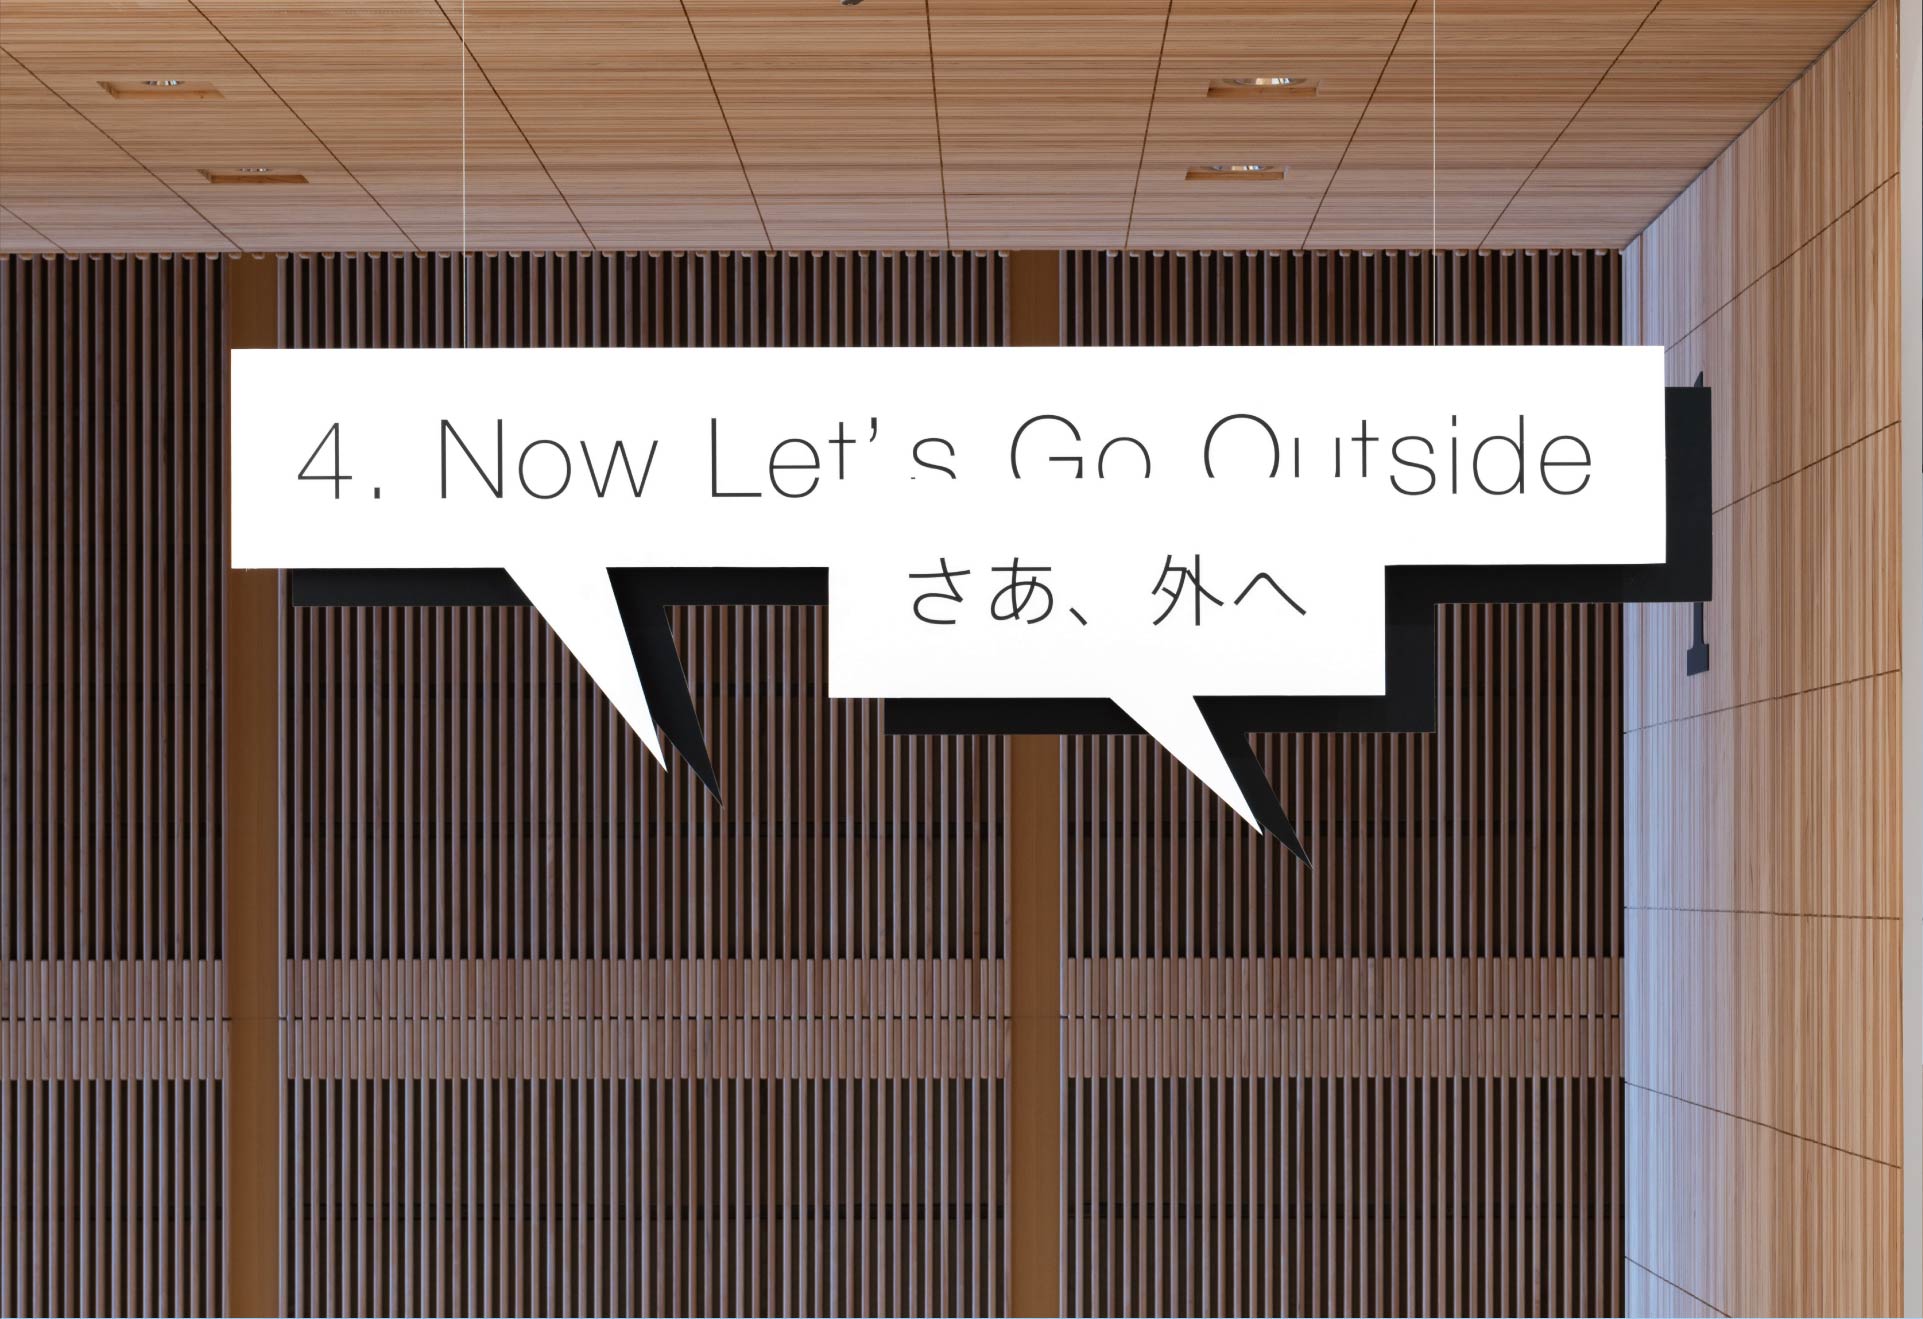 富山県美術館企画展「わたしはどこにいる？　道標（サイン）をめぐるアートとデザイン」